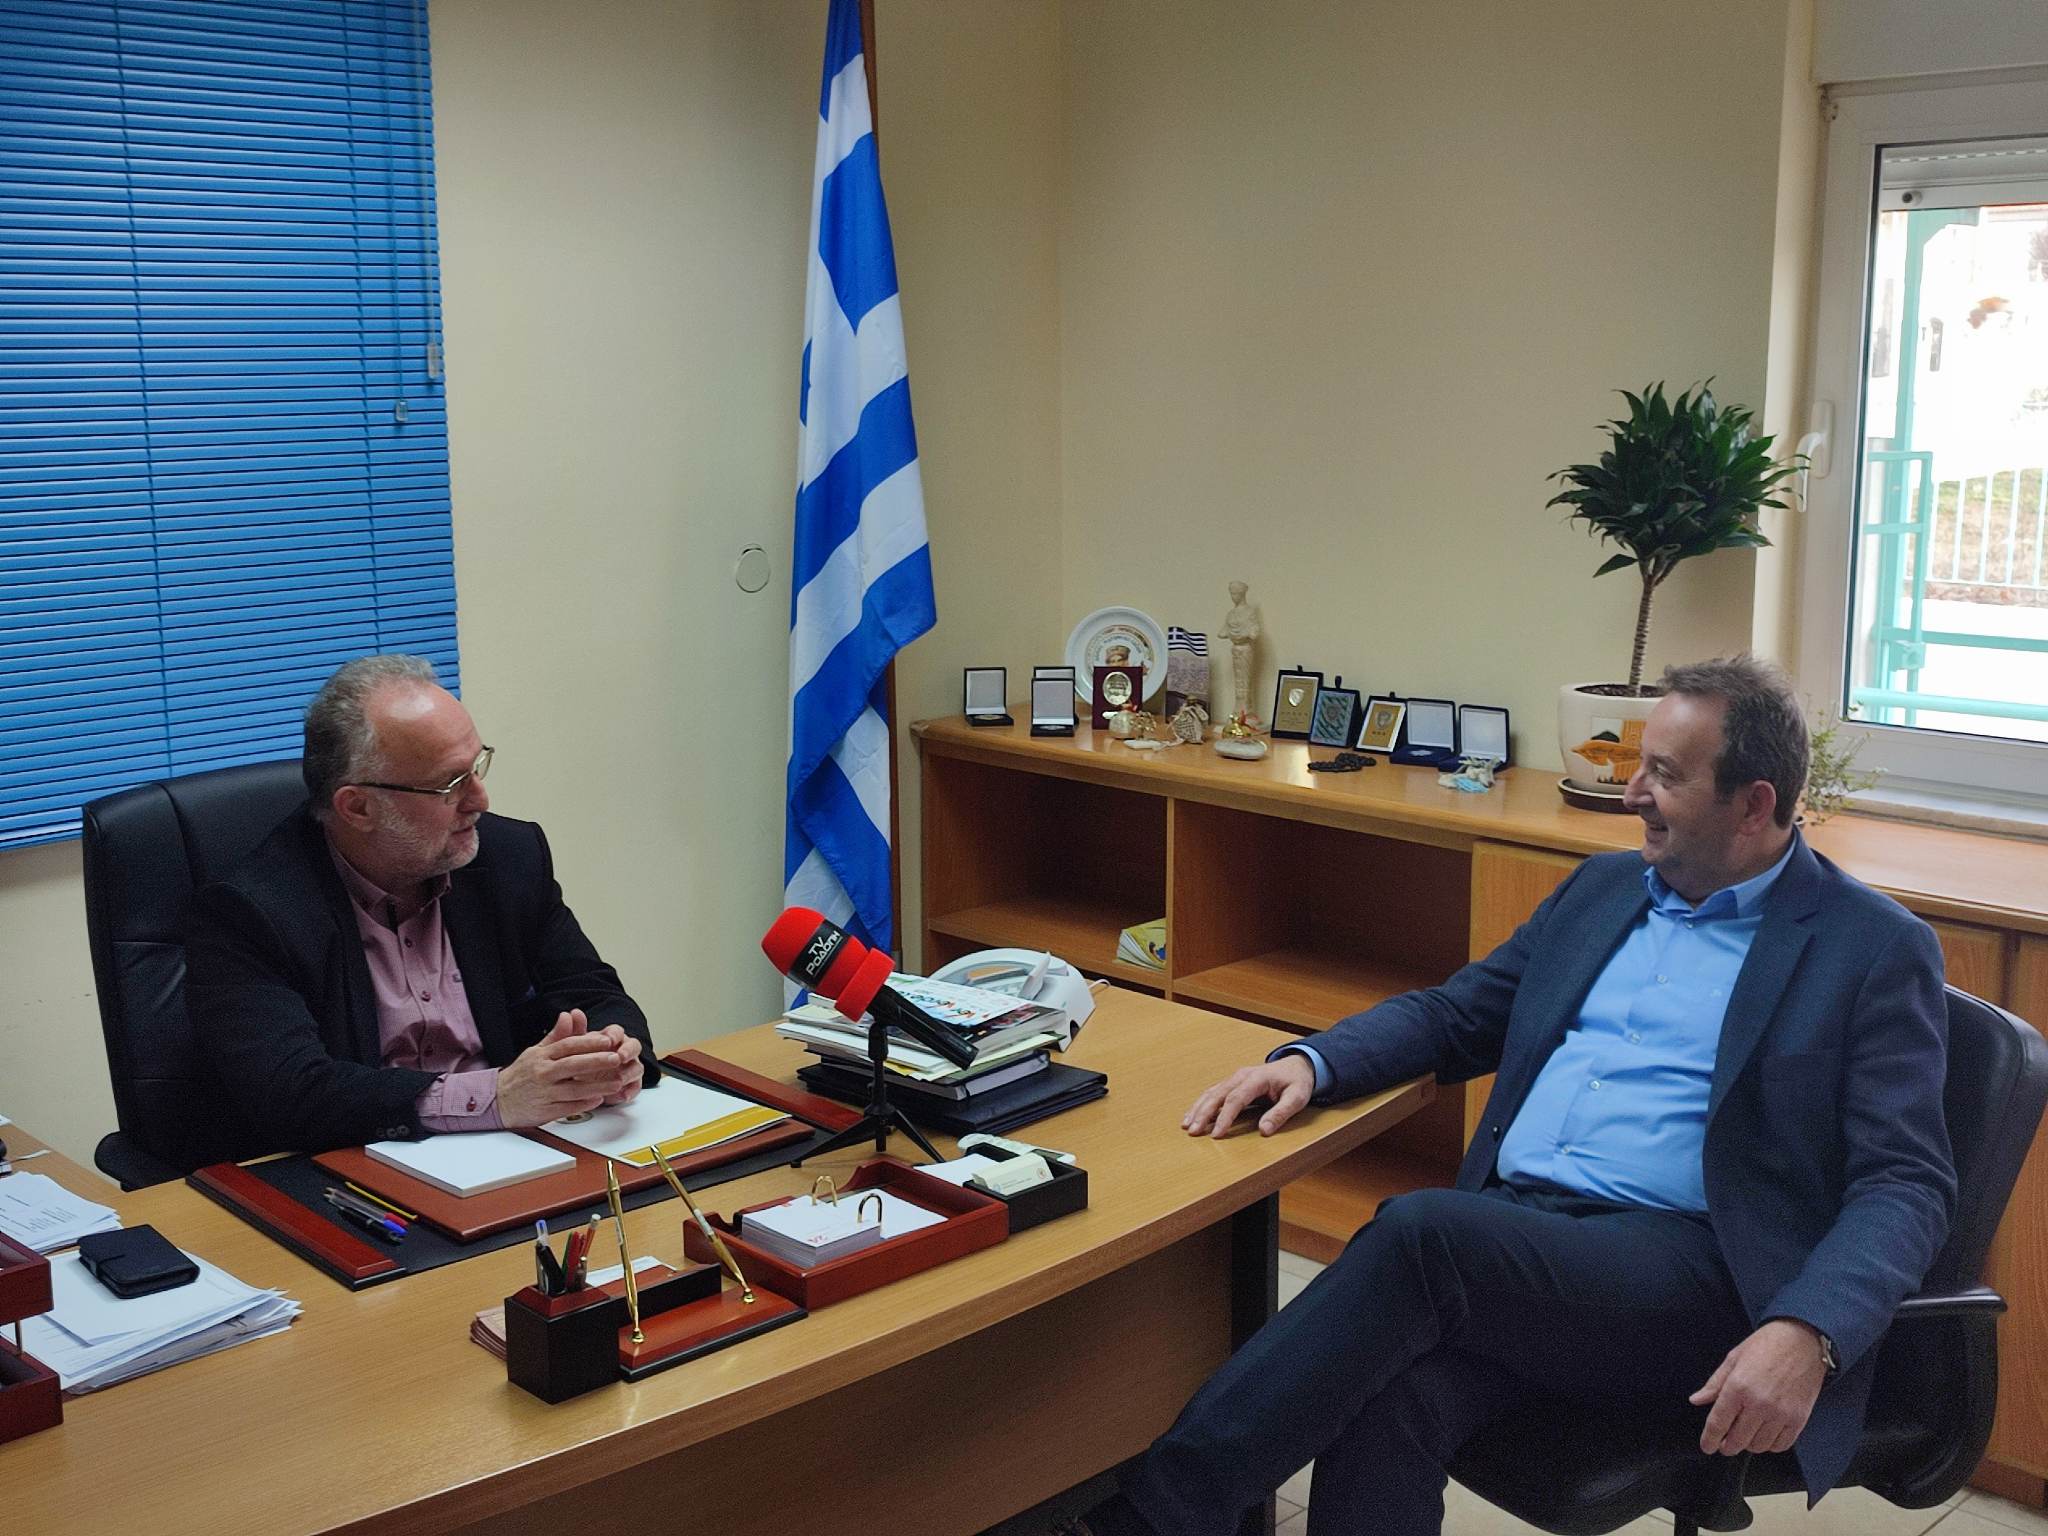 Ο βουλευτής ΣΥΡΙΖΑ Ν.Ροδόπης Δημήτρης Χαρίτου επισκέφτηκε τον δήμαρχο Μαρώνειας -Σαπών